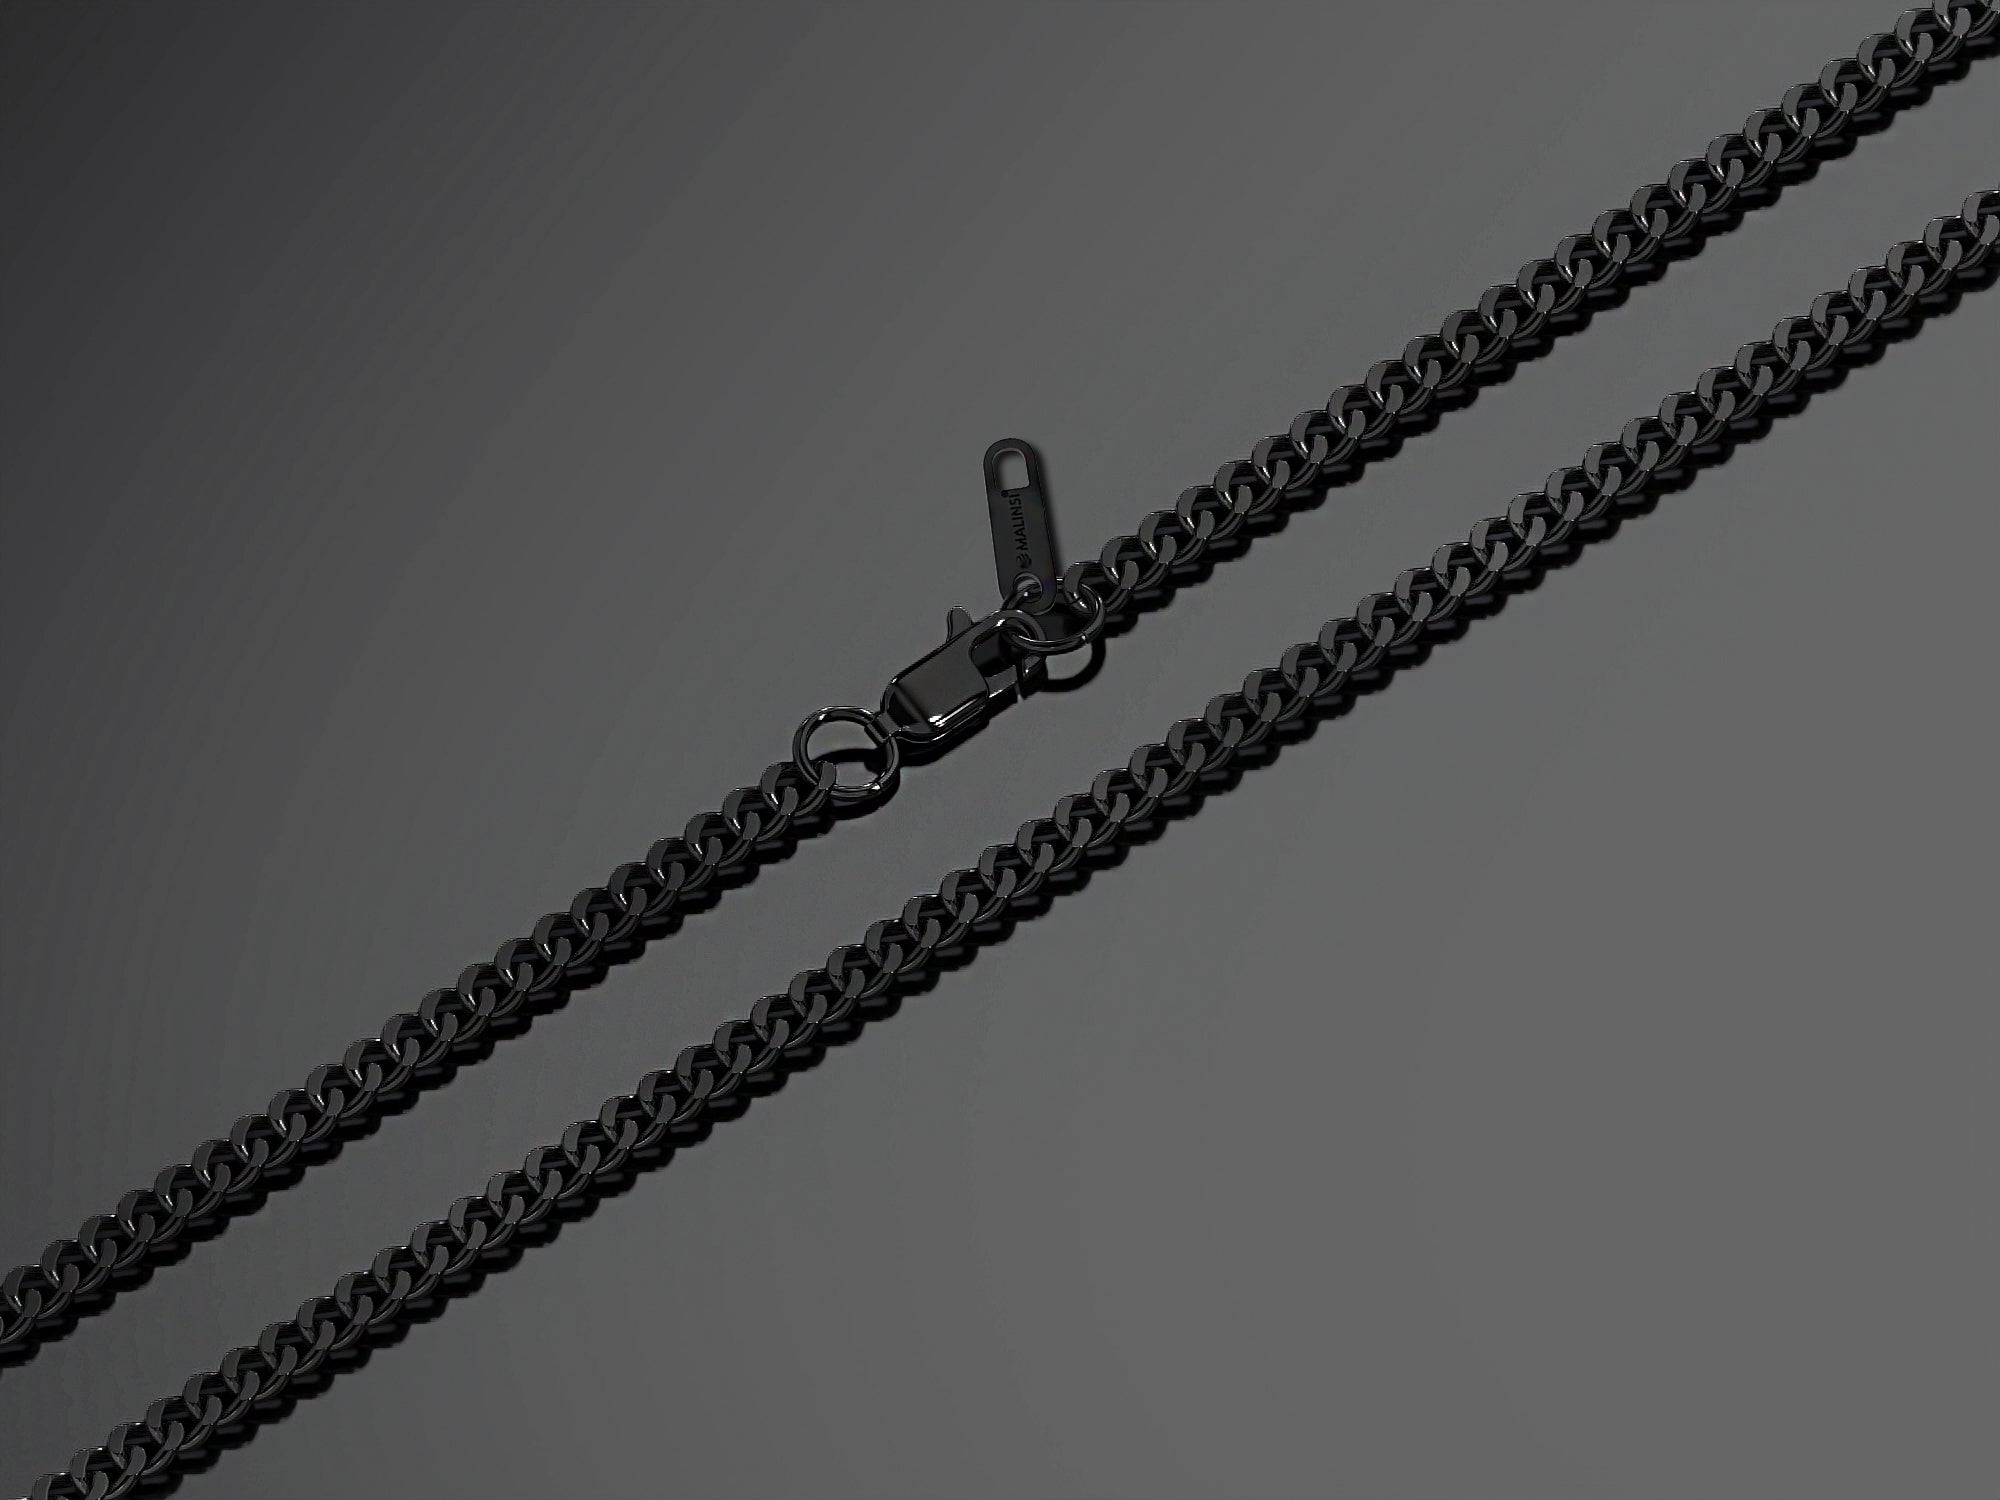 Cuban Link Ketting | Compleet RVS 60cm | Zwart